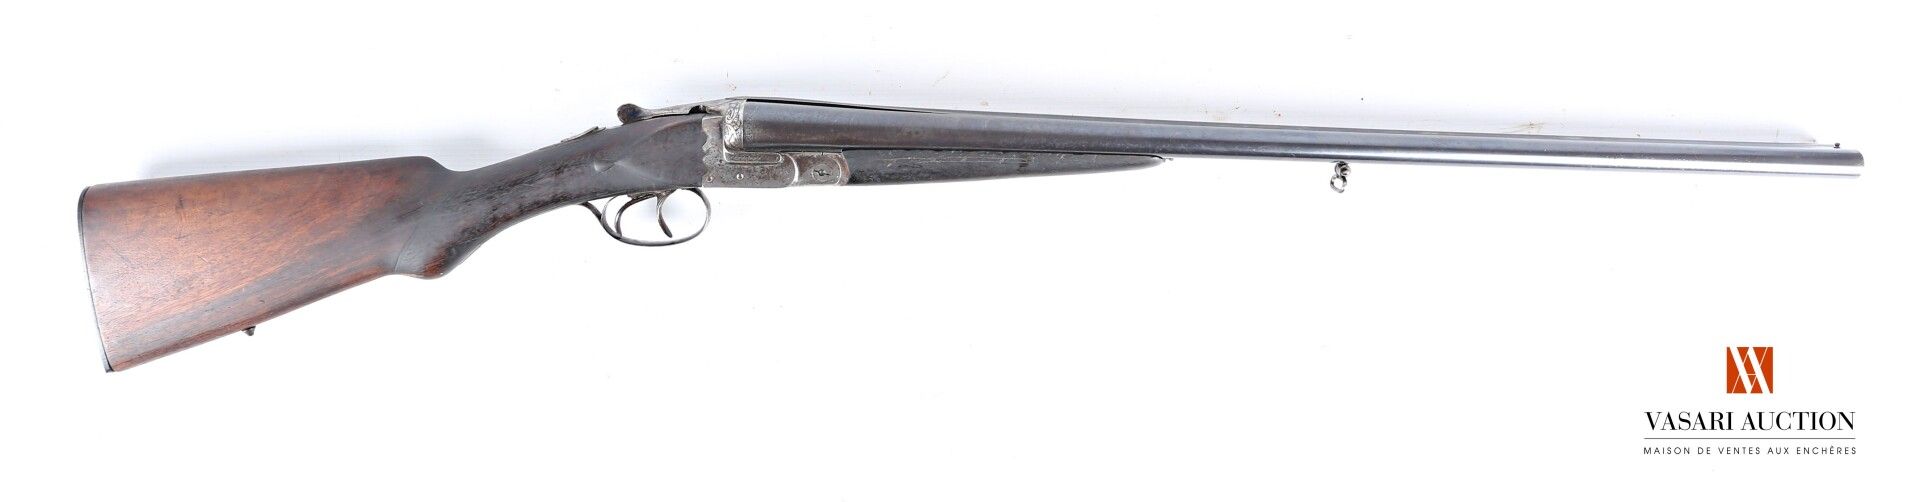 Null 圣埃蒂安HELICE的无锤霰弹枪，口径16-65，68厘米并排枪管，刻有摇杆，双扳机，36厘米处有半截手枪握把，磨损，氧化，有处理过的痕迹，使用状态，&hellip;